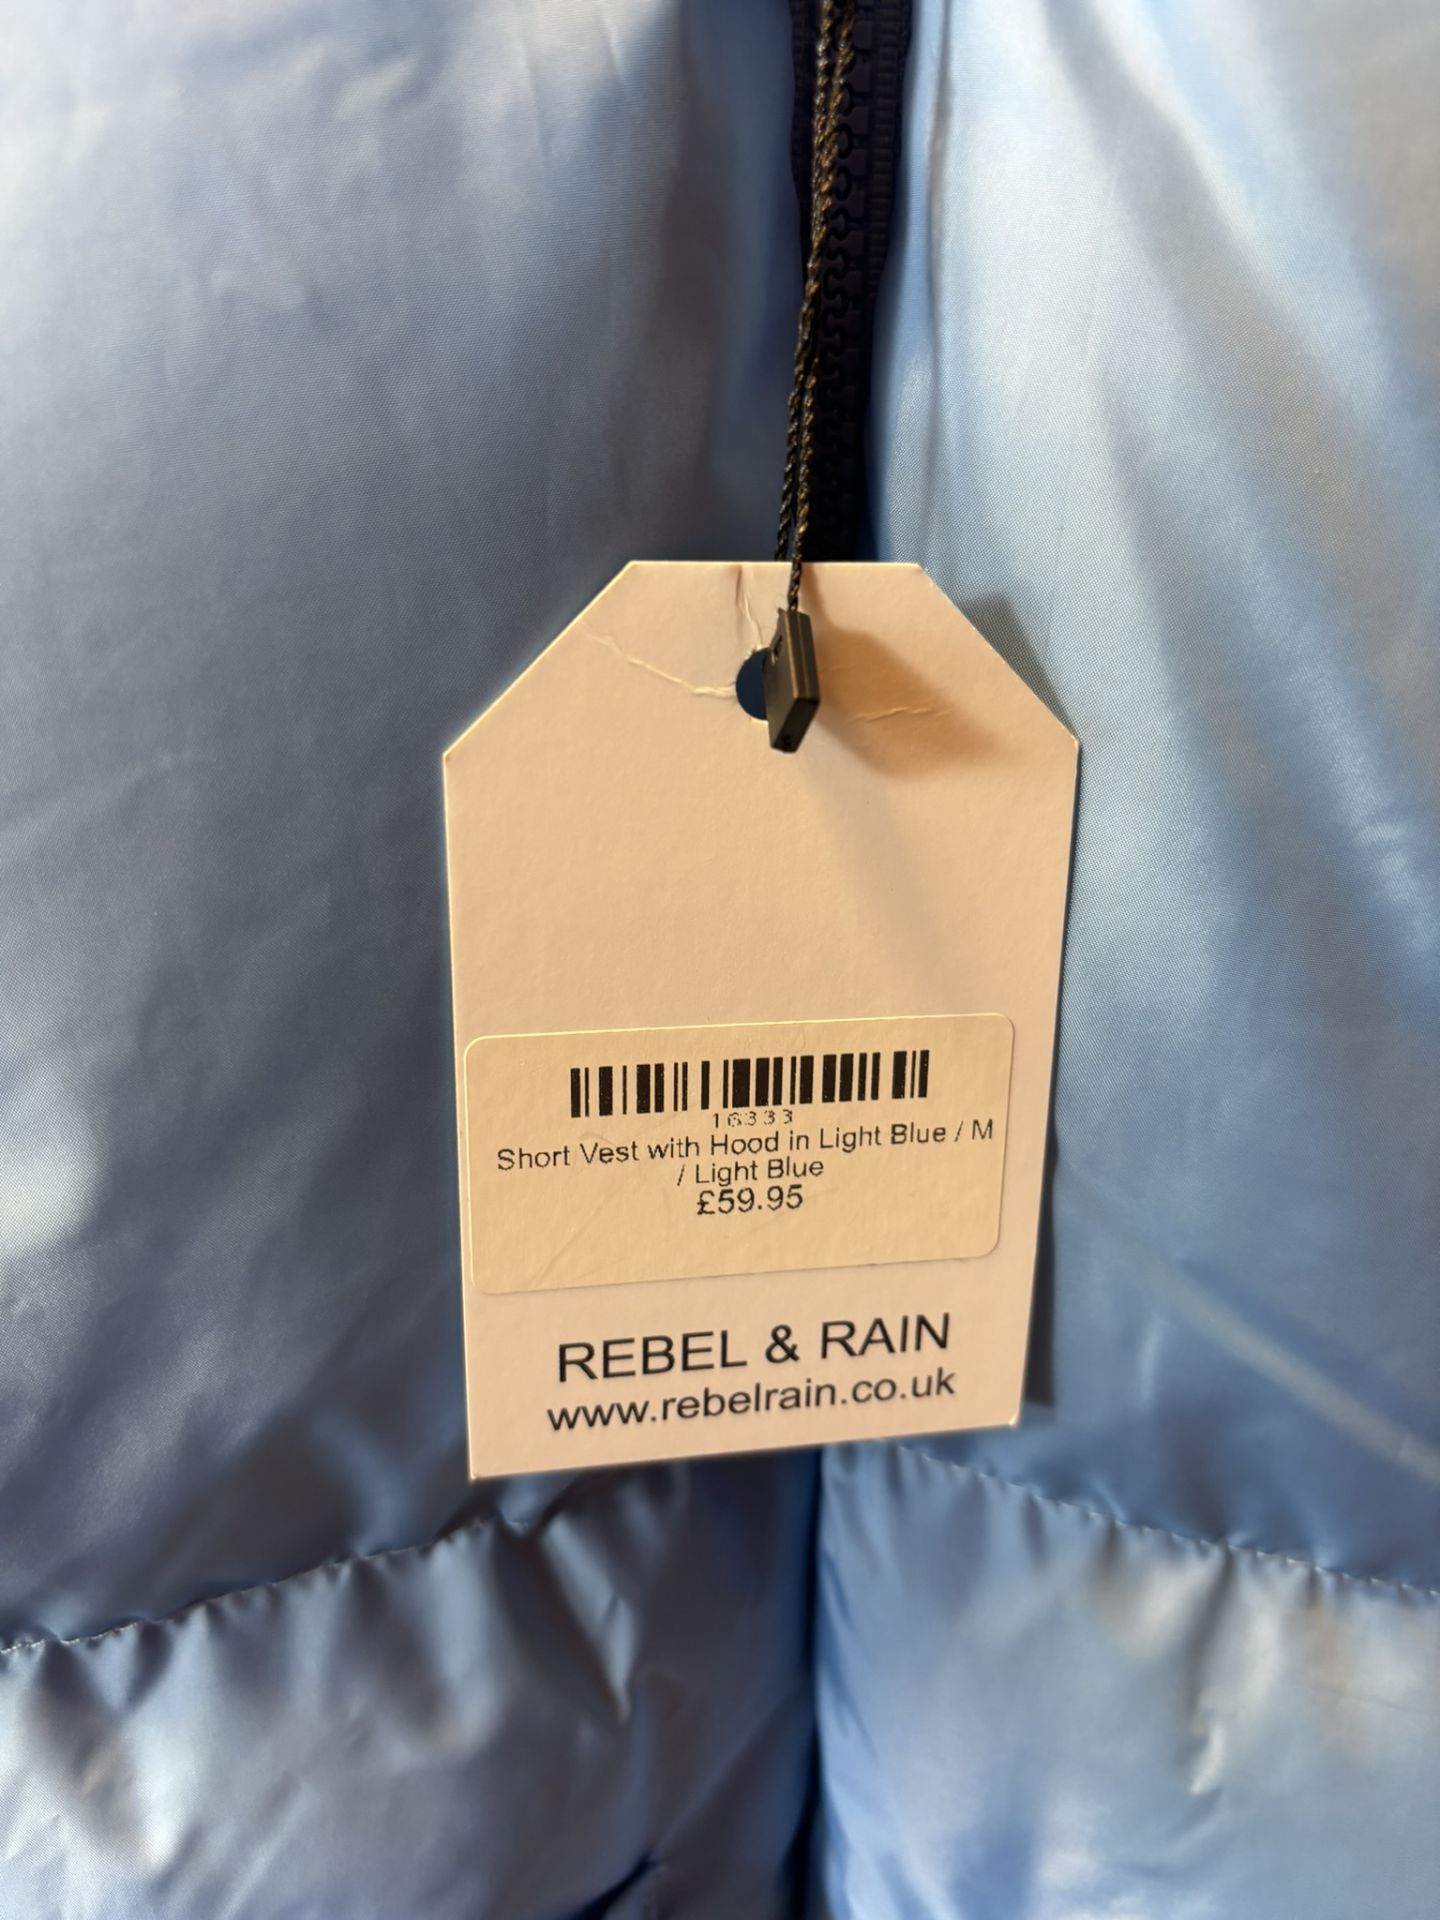 Robin Medium Light Blue Short Vest With Hood, size UK8/EUR 38 - Image 6 of 6